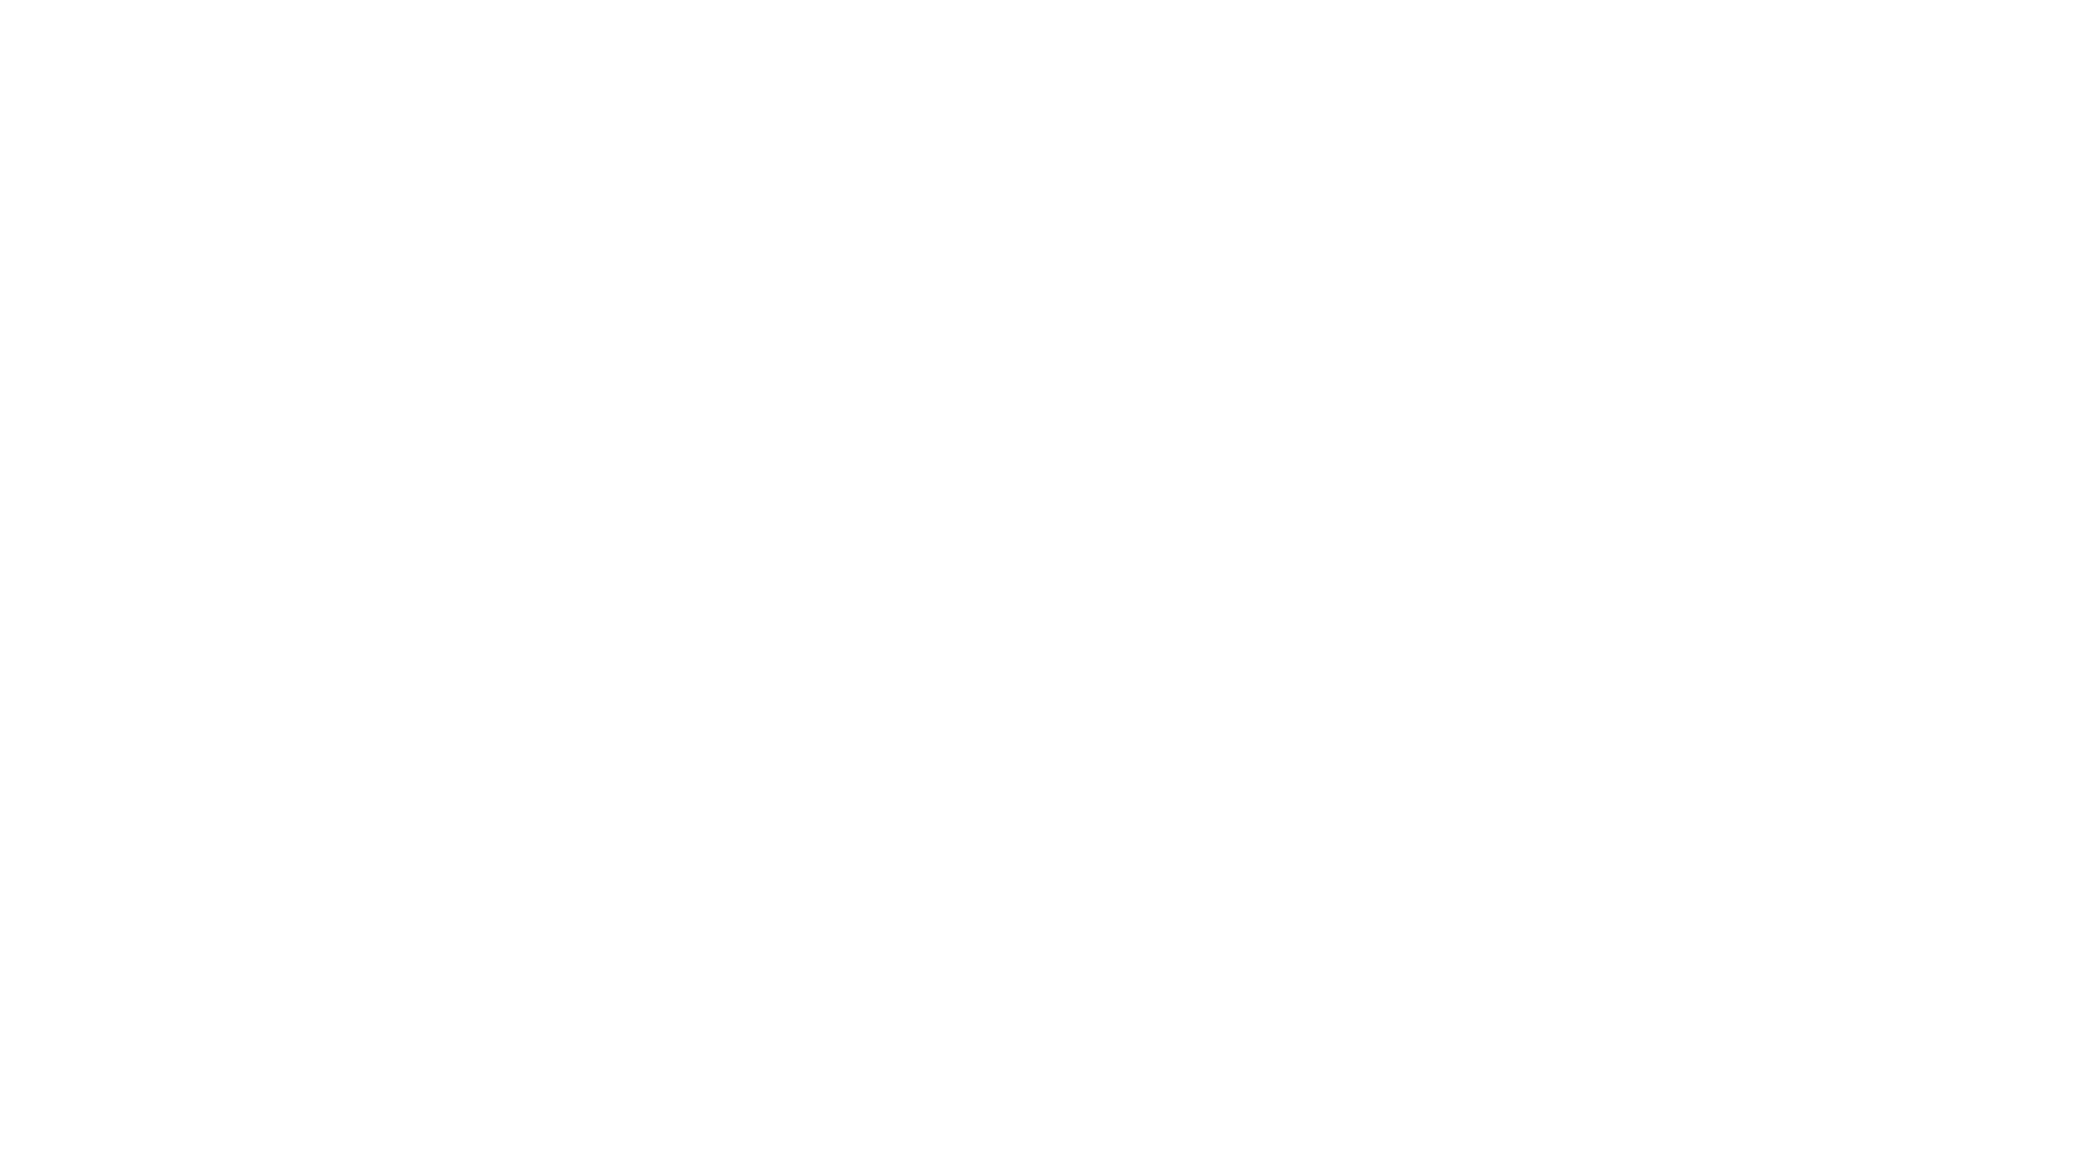 Expando Media